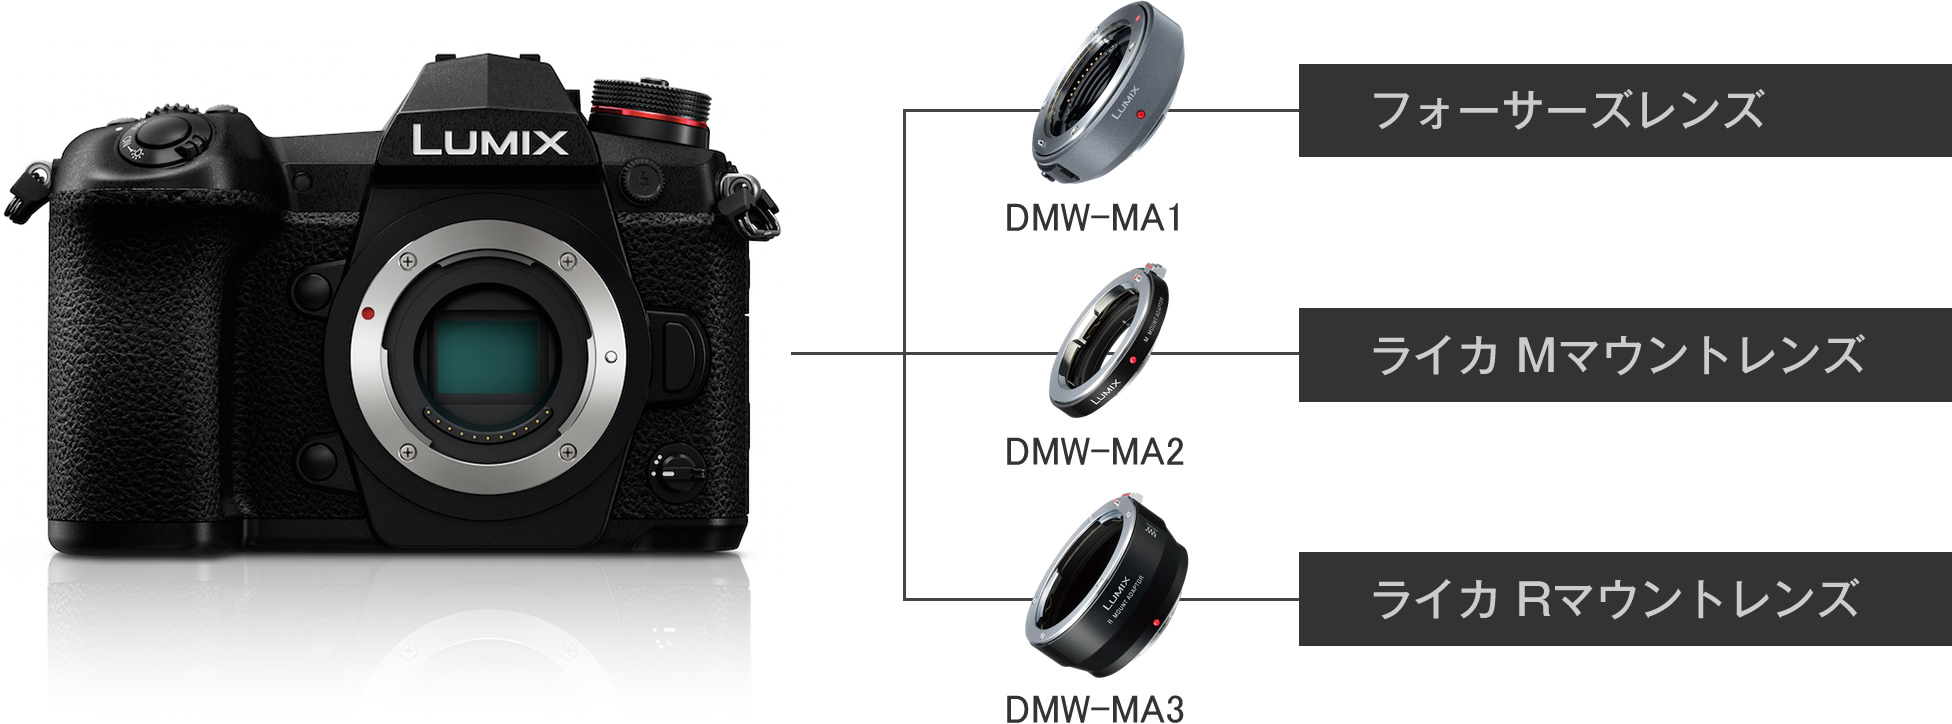 拡張性 | DC-G9 | Gシリーズ 一眼カメラ | 商品一覧 | デジタルカメラ 